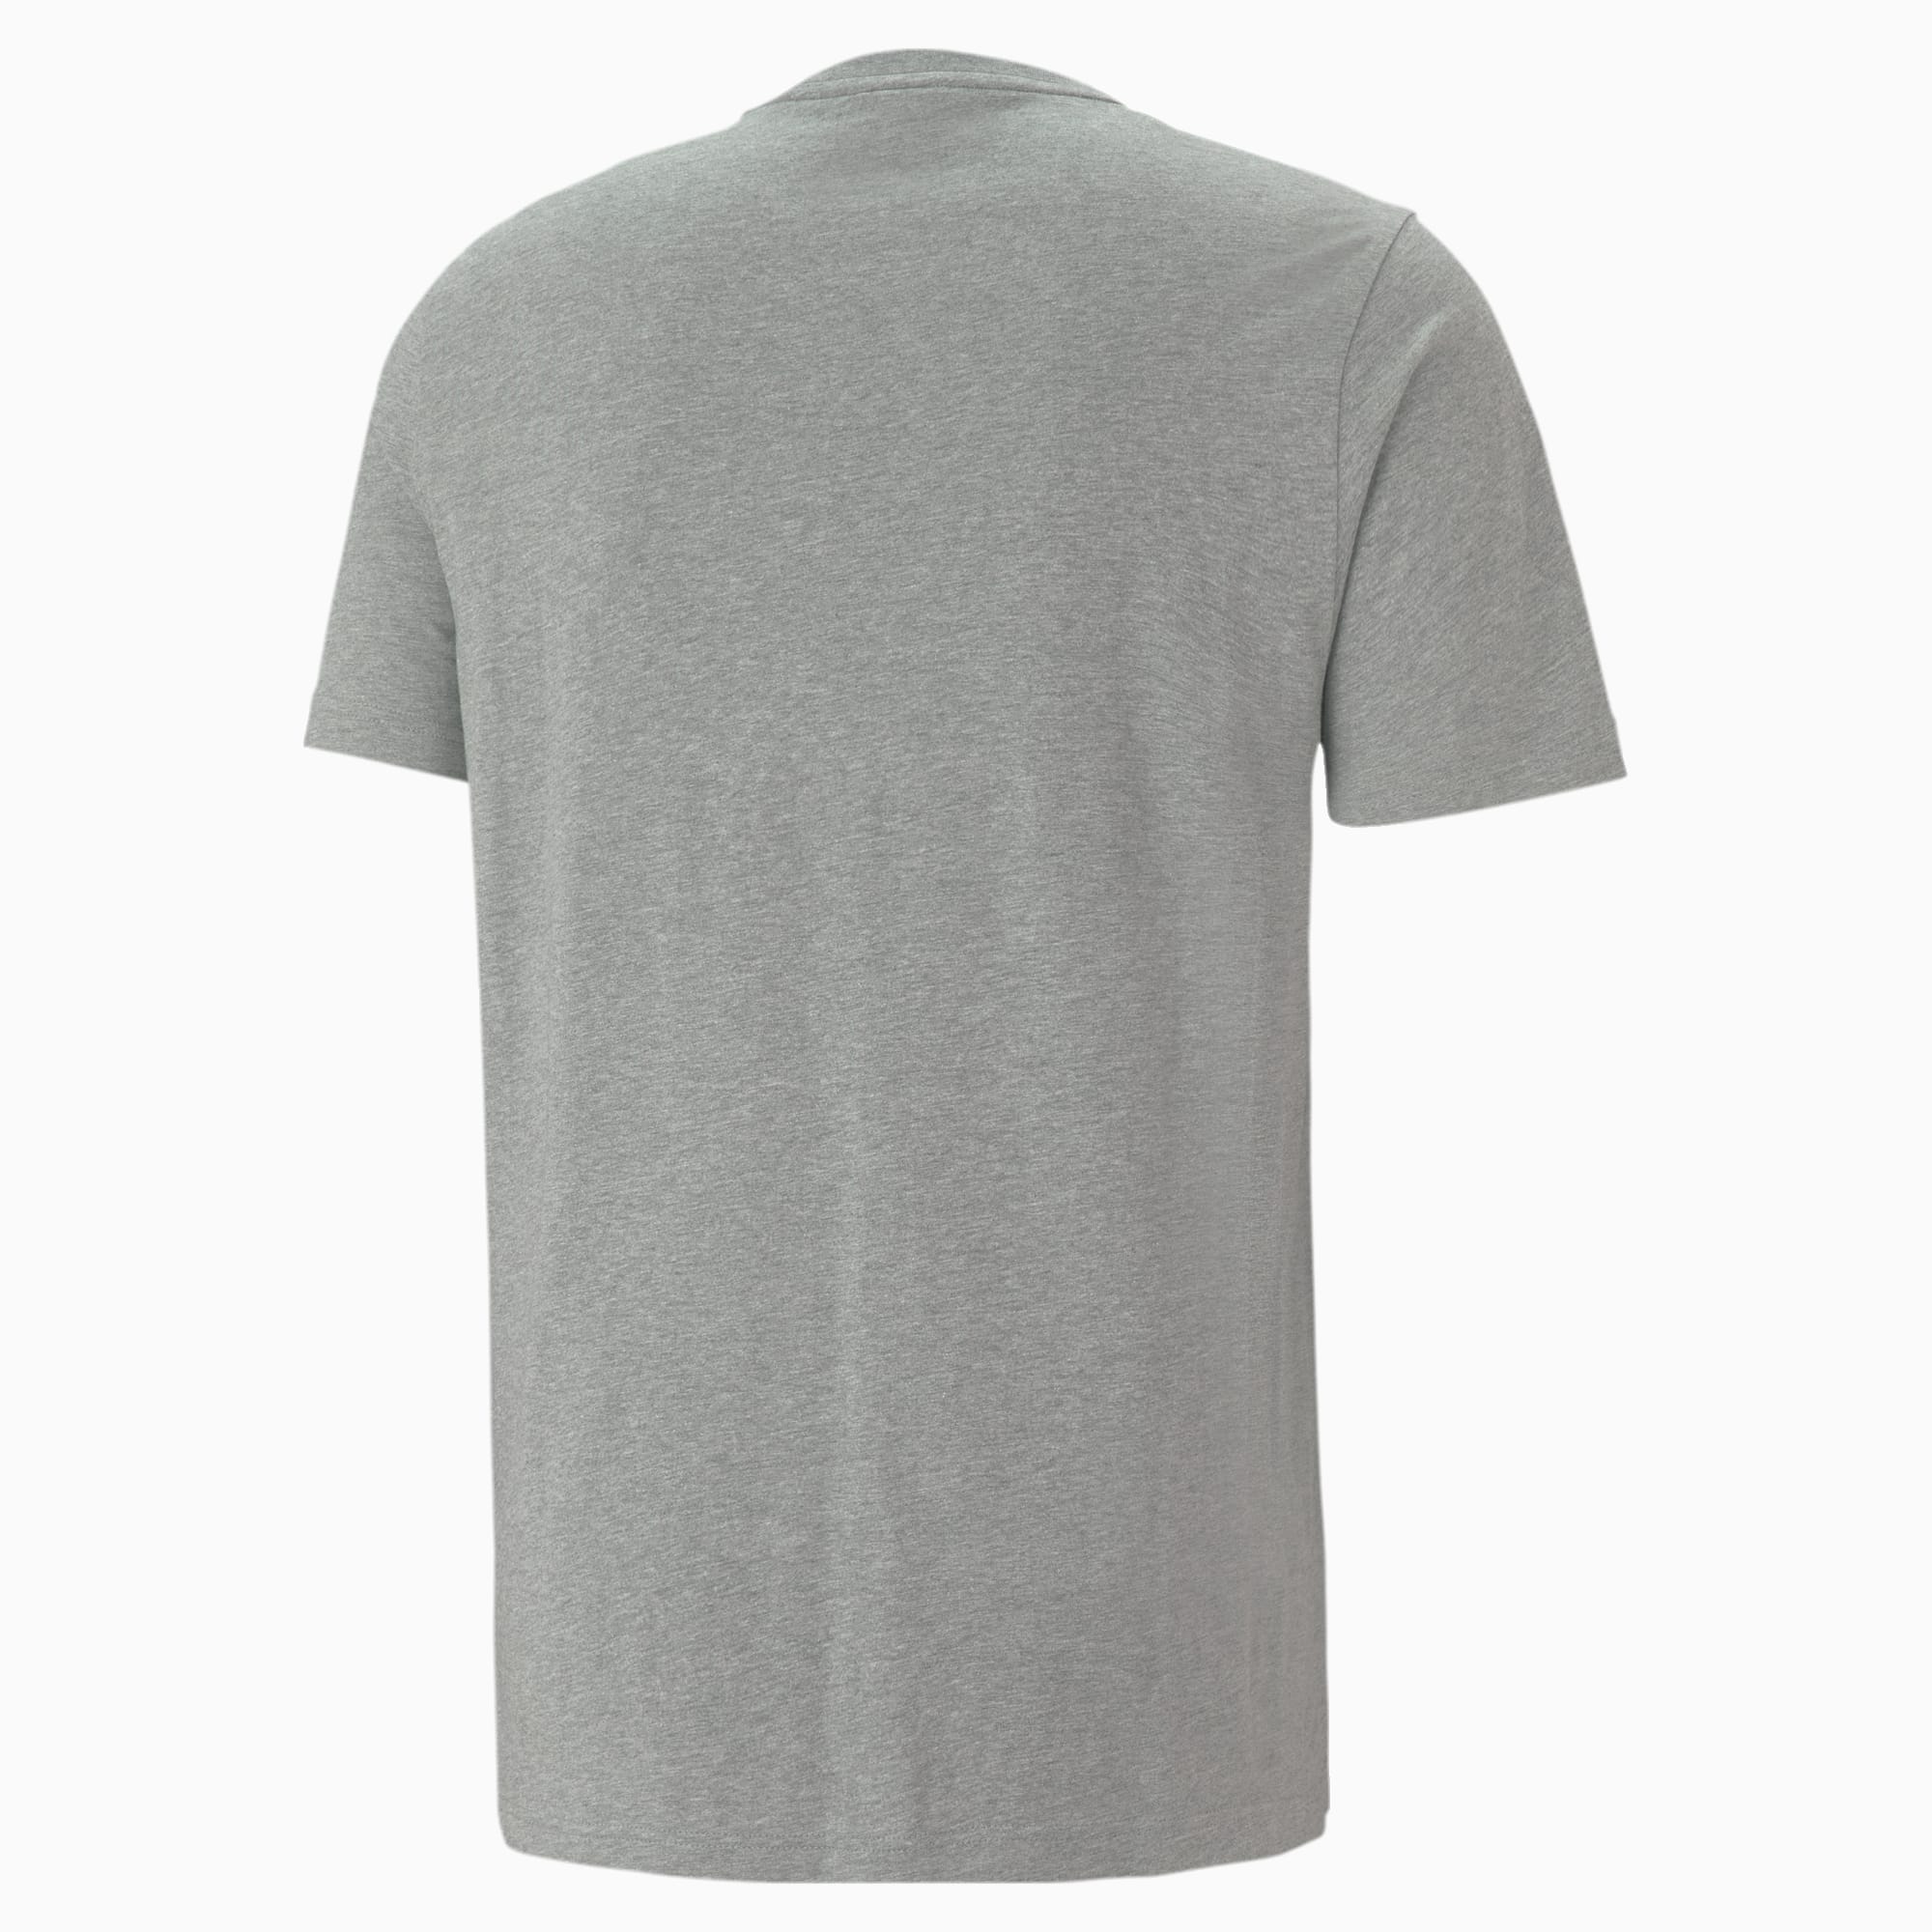 PUMA Classics Logo T-Shirt Herren, Mit Heide, Grau, Größe: L, Kleidung